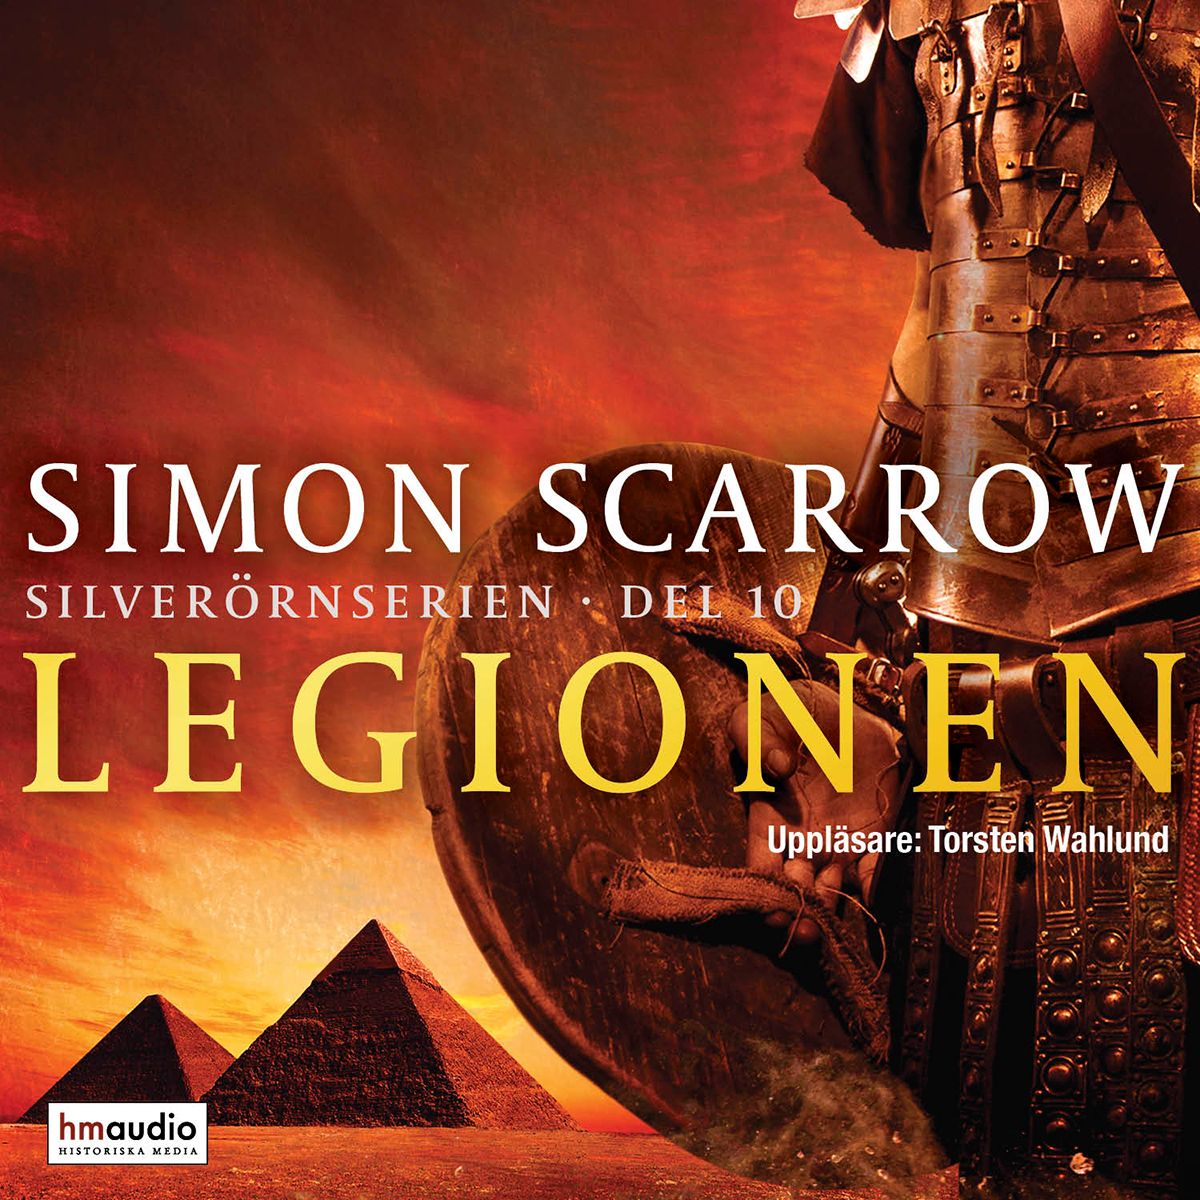 Legionen, ljudbok av Simon Scarrow